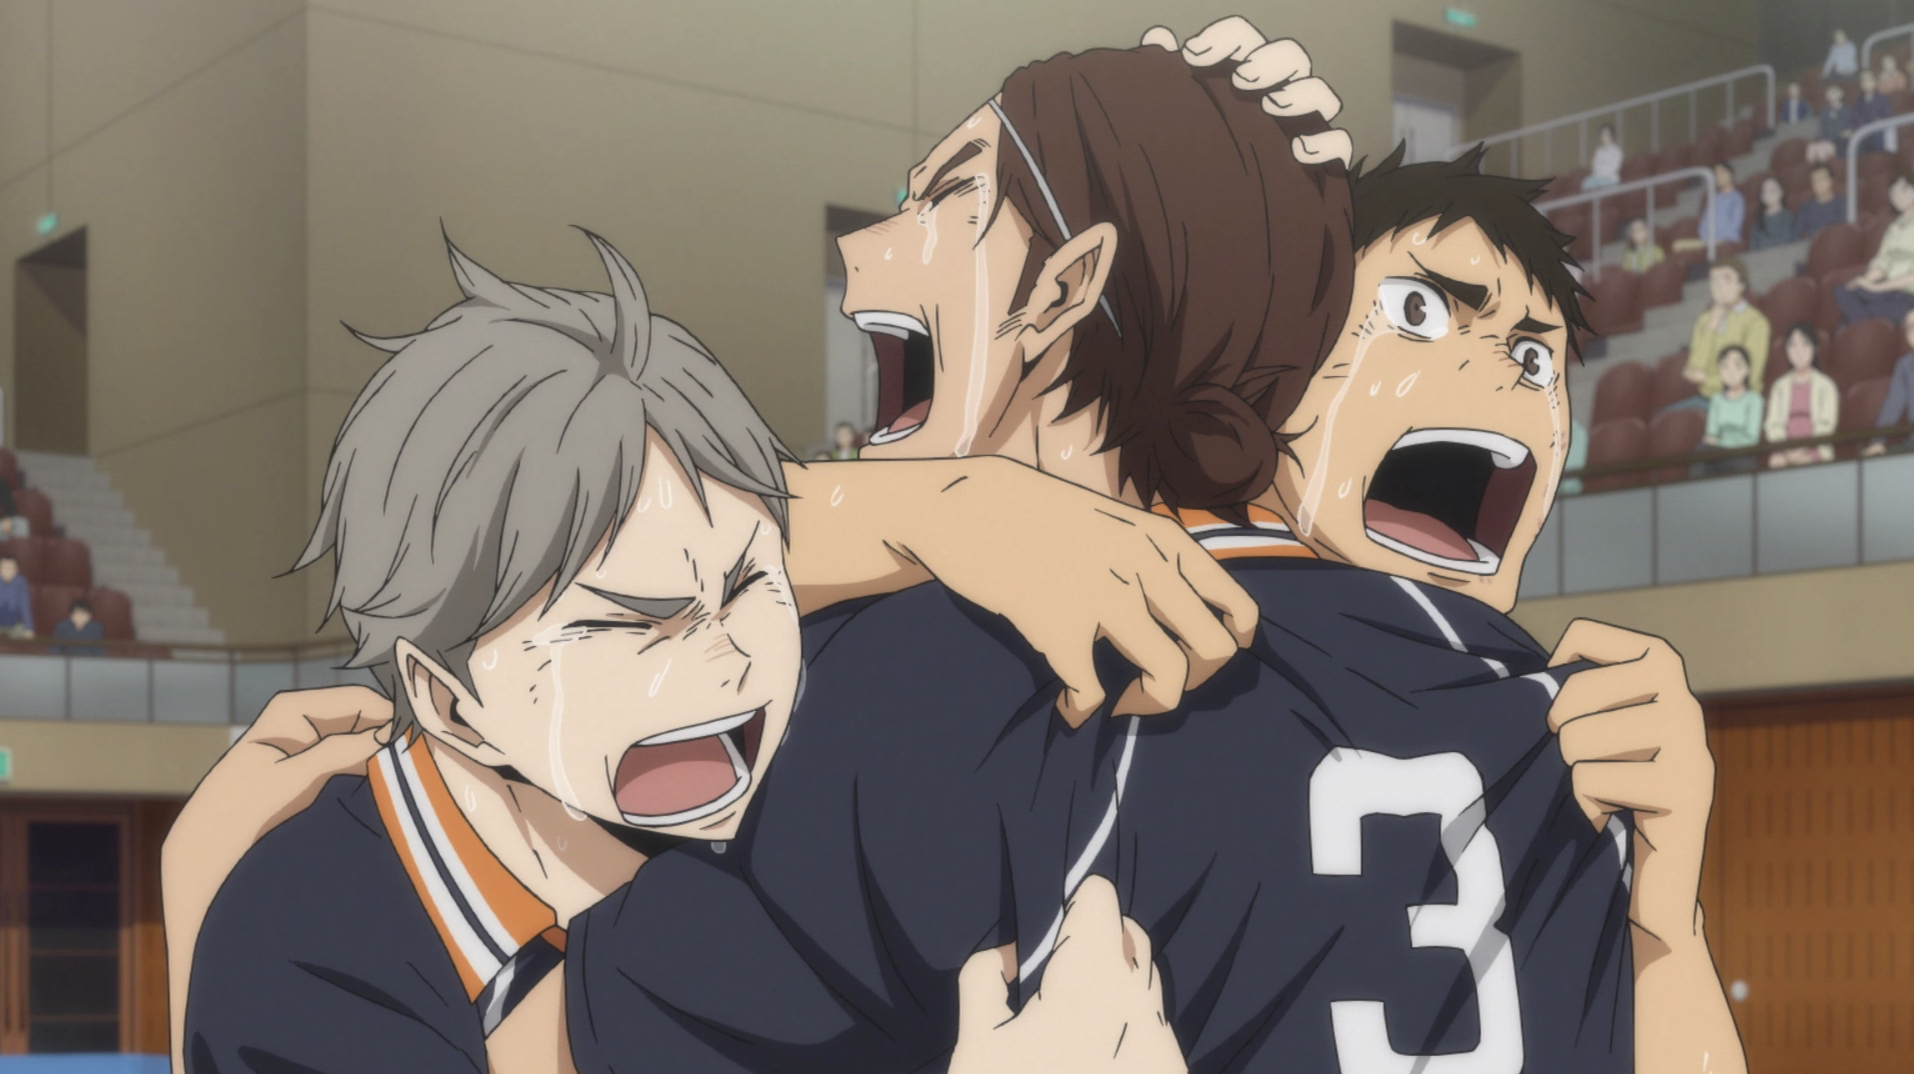 Sugawara, Asahi and Daichi hugging each other while crying